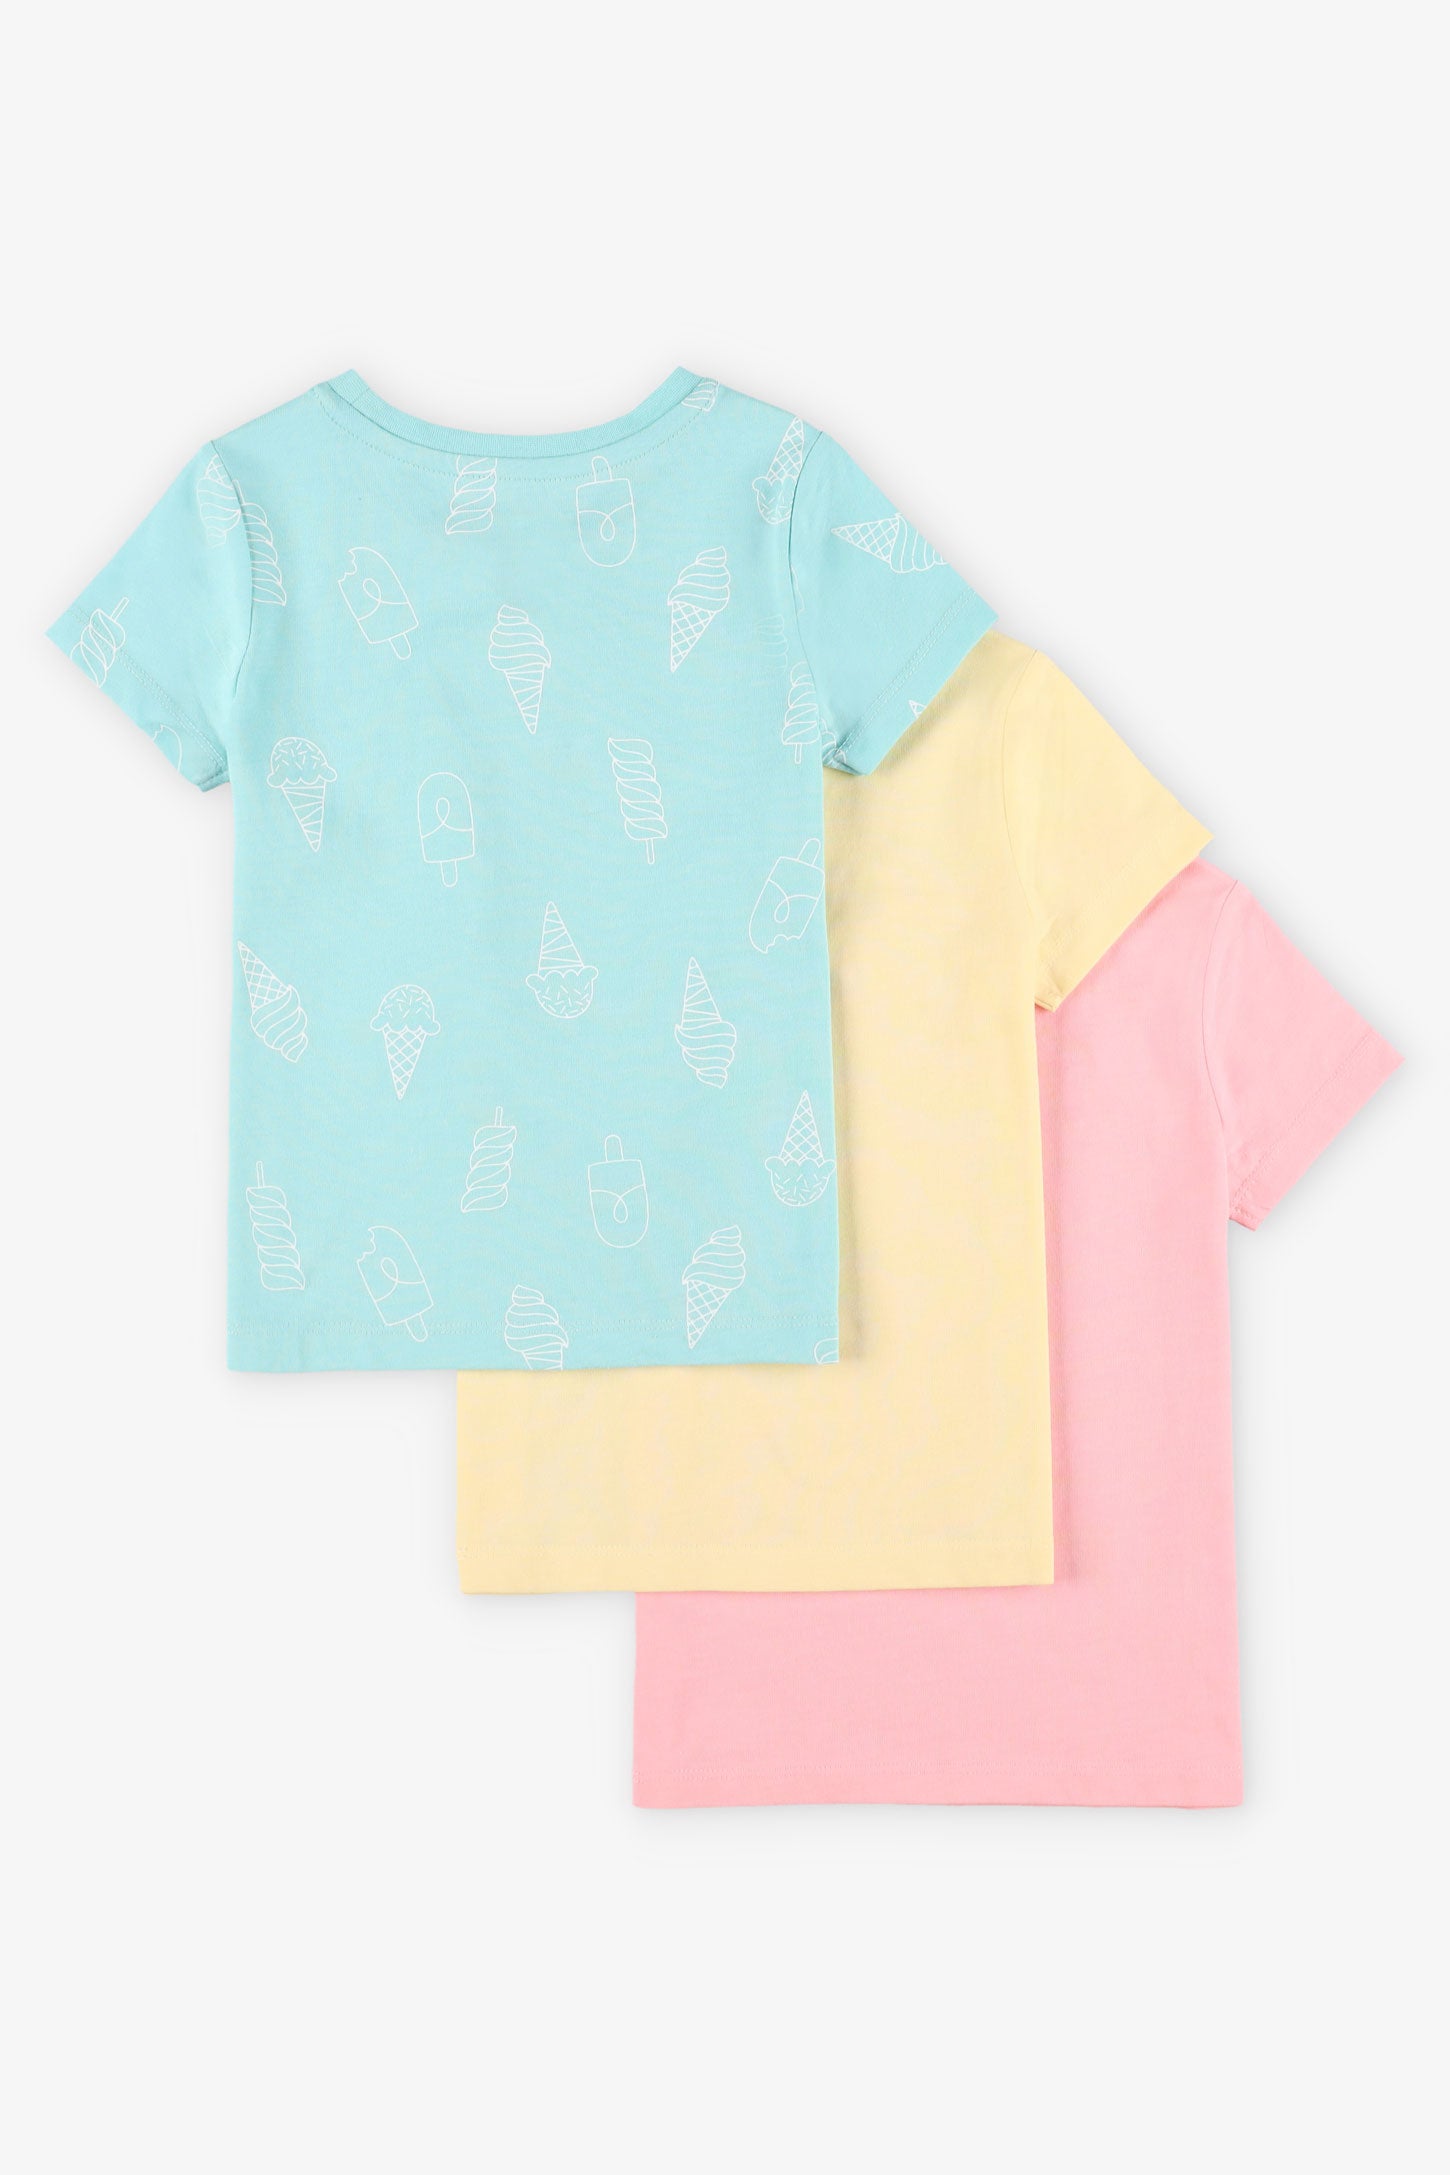 Lot de 3 t-shirts en coton - Enfant fille && ROSE PALE